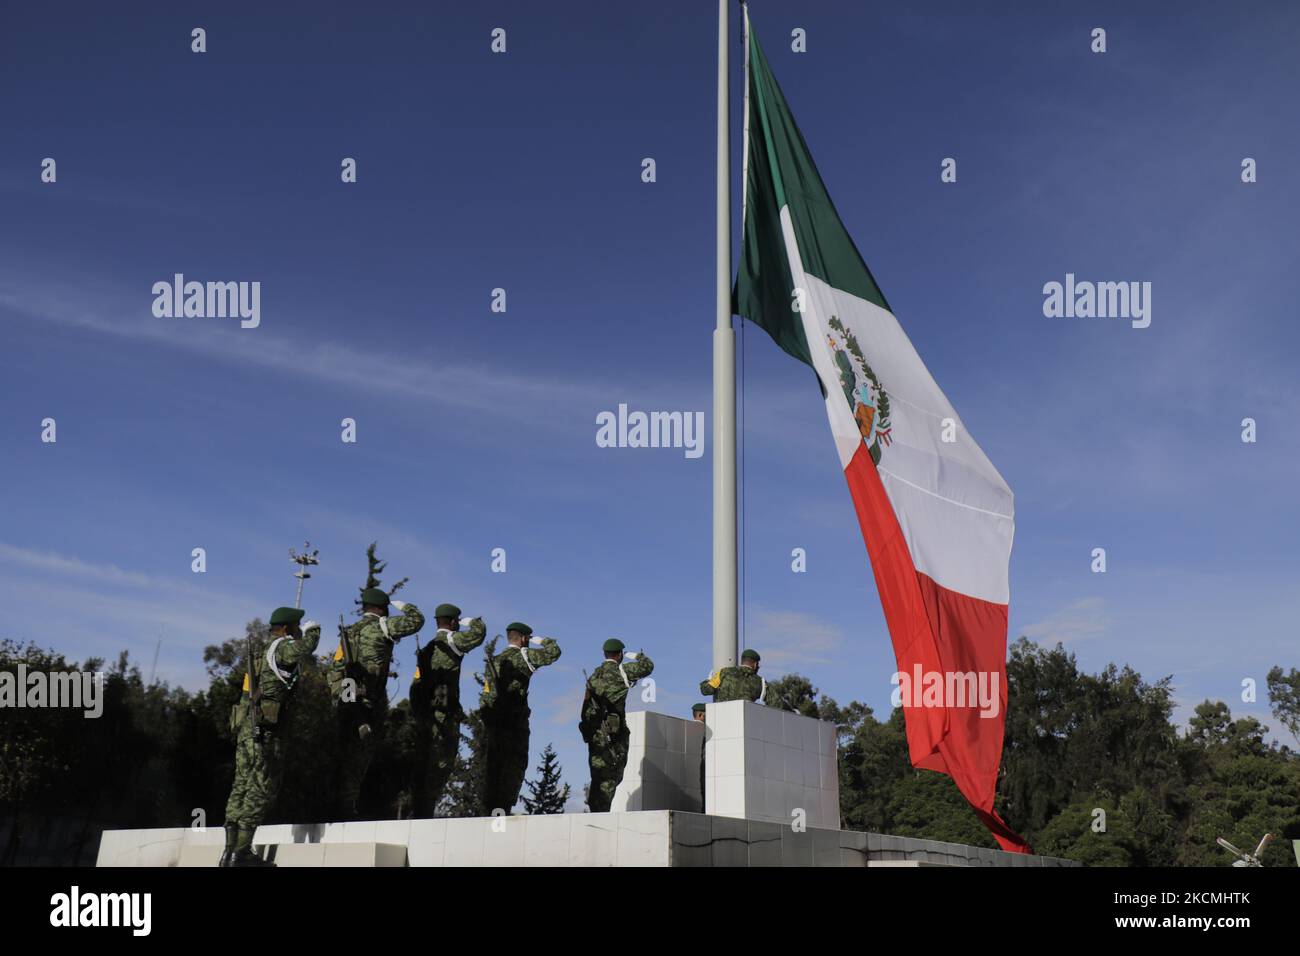 Mitglieder des Verteidigungsministeriums (SEDENA) ehren die Flagge auf der Esplanade der Bekleidungs- und Ausrüstungsfabrik El Vergel Iztapalapa, Mexiko-Stadt, während des Gesundheitsnotfalls COVID-19 und der gelben epidemiologischen Ampel in der Hauptstadt. (Foto von Gerardo Vieyra/NurPhoto) Stockfoto